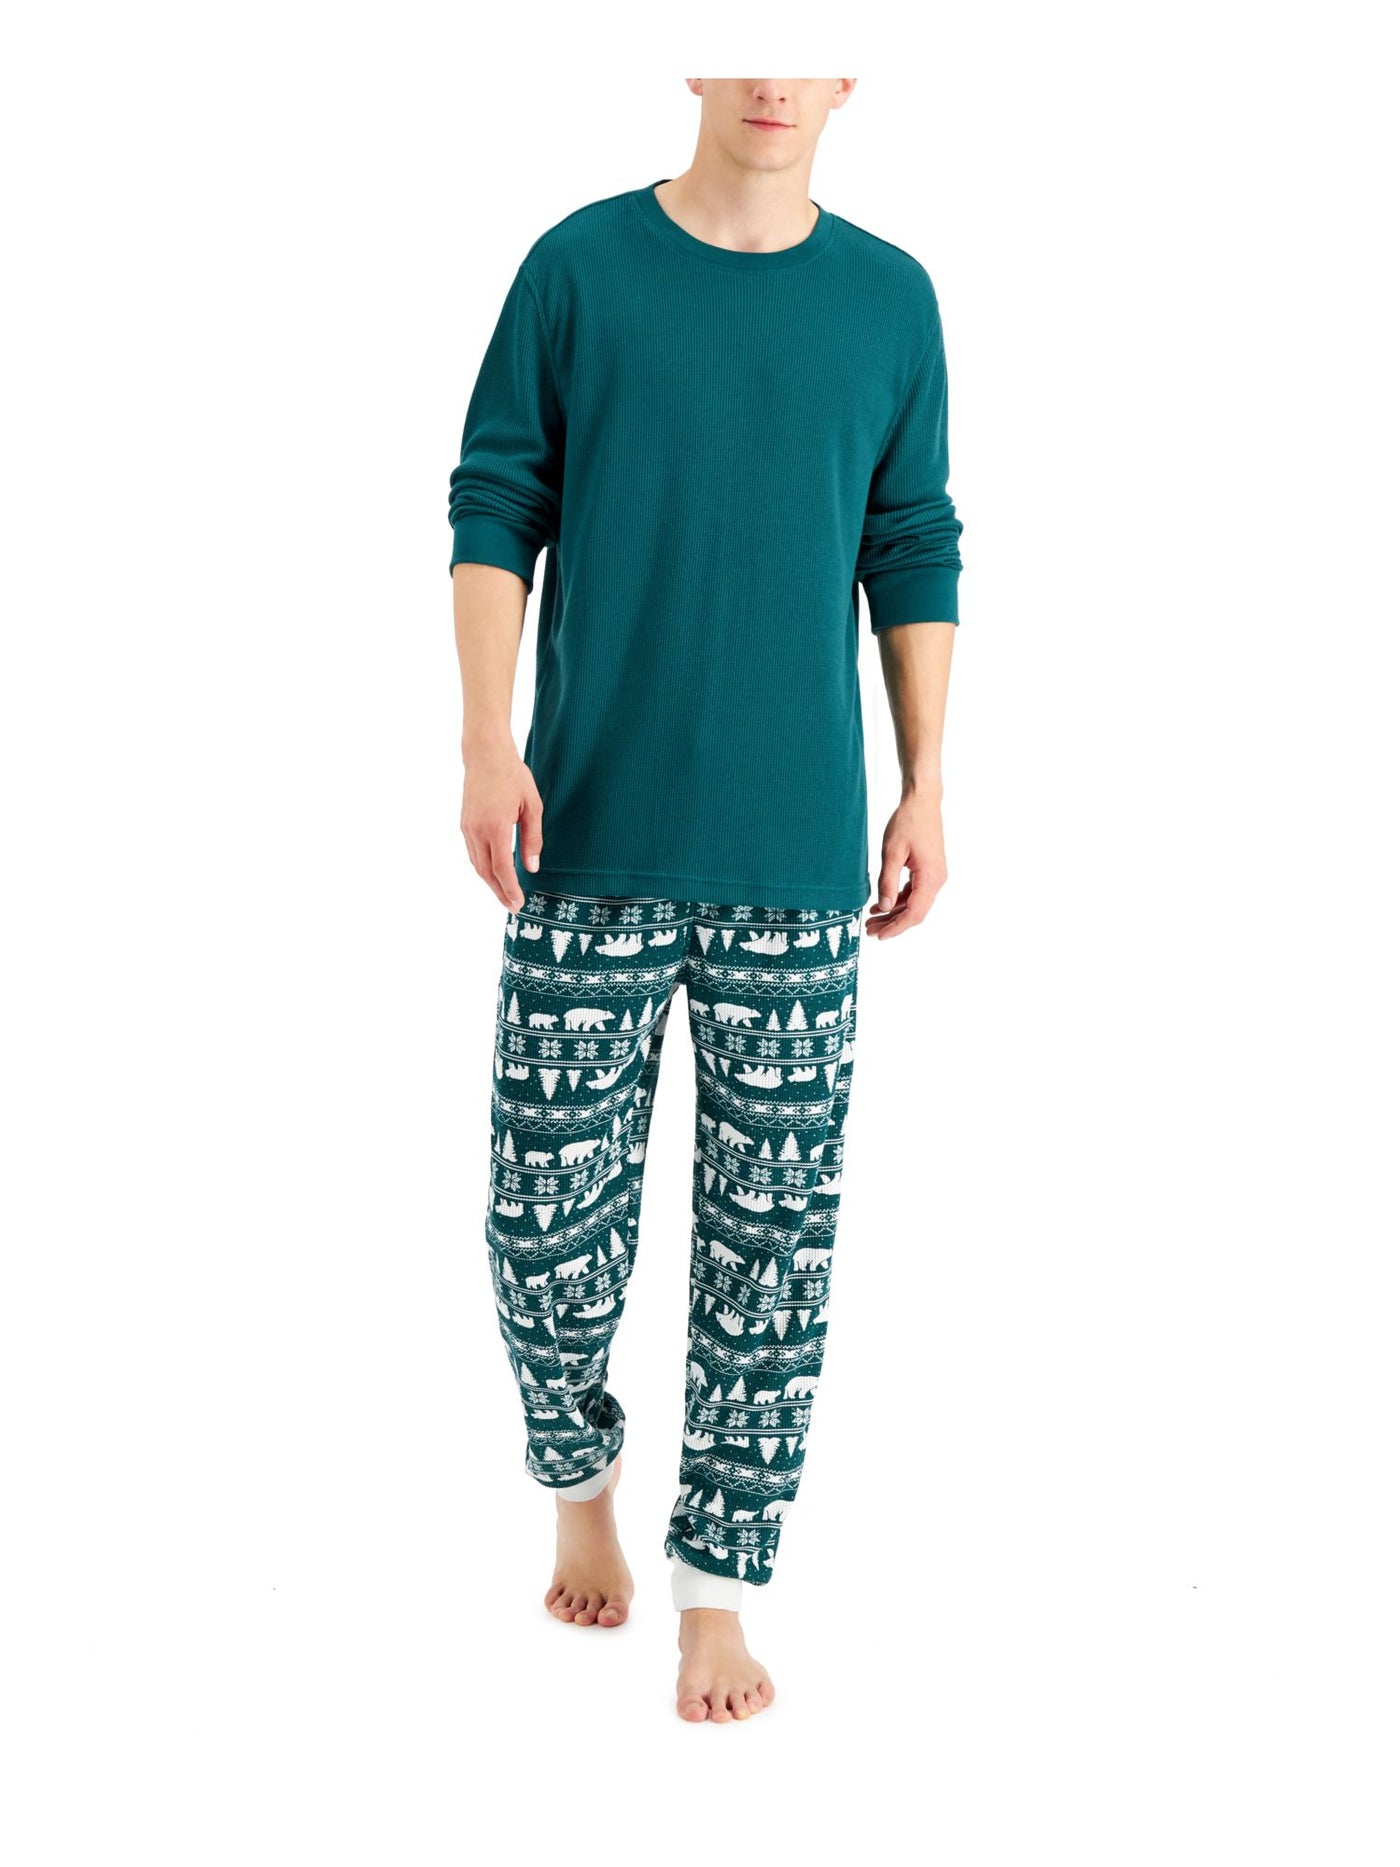 FAMILY PJs Mens Bear Fair Isle Green Textured Long Sleeve T-Shirt Top Cuffed Pants Pajamas L